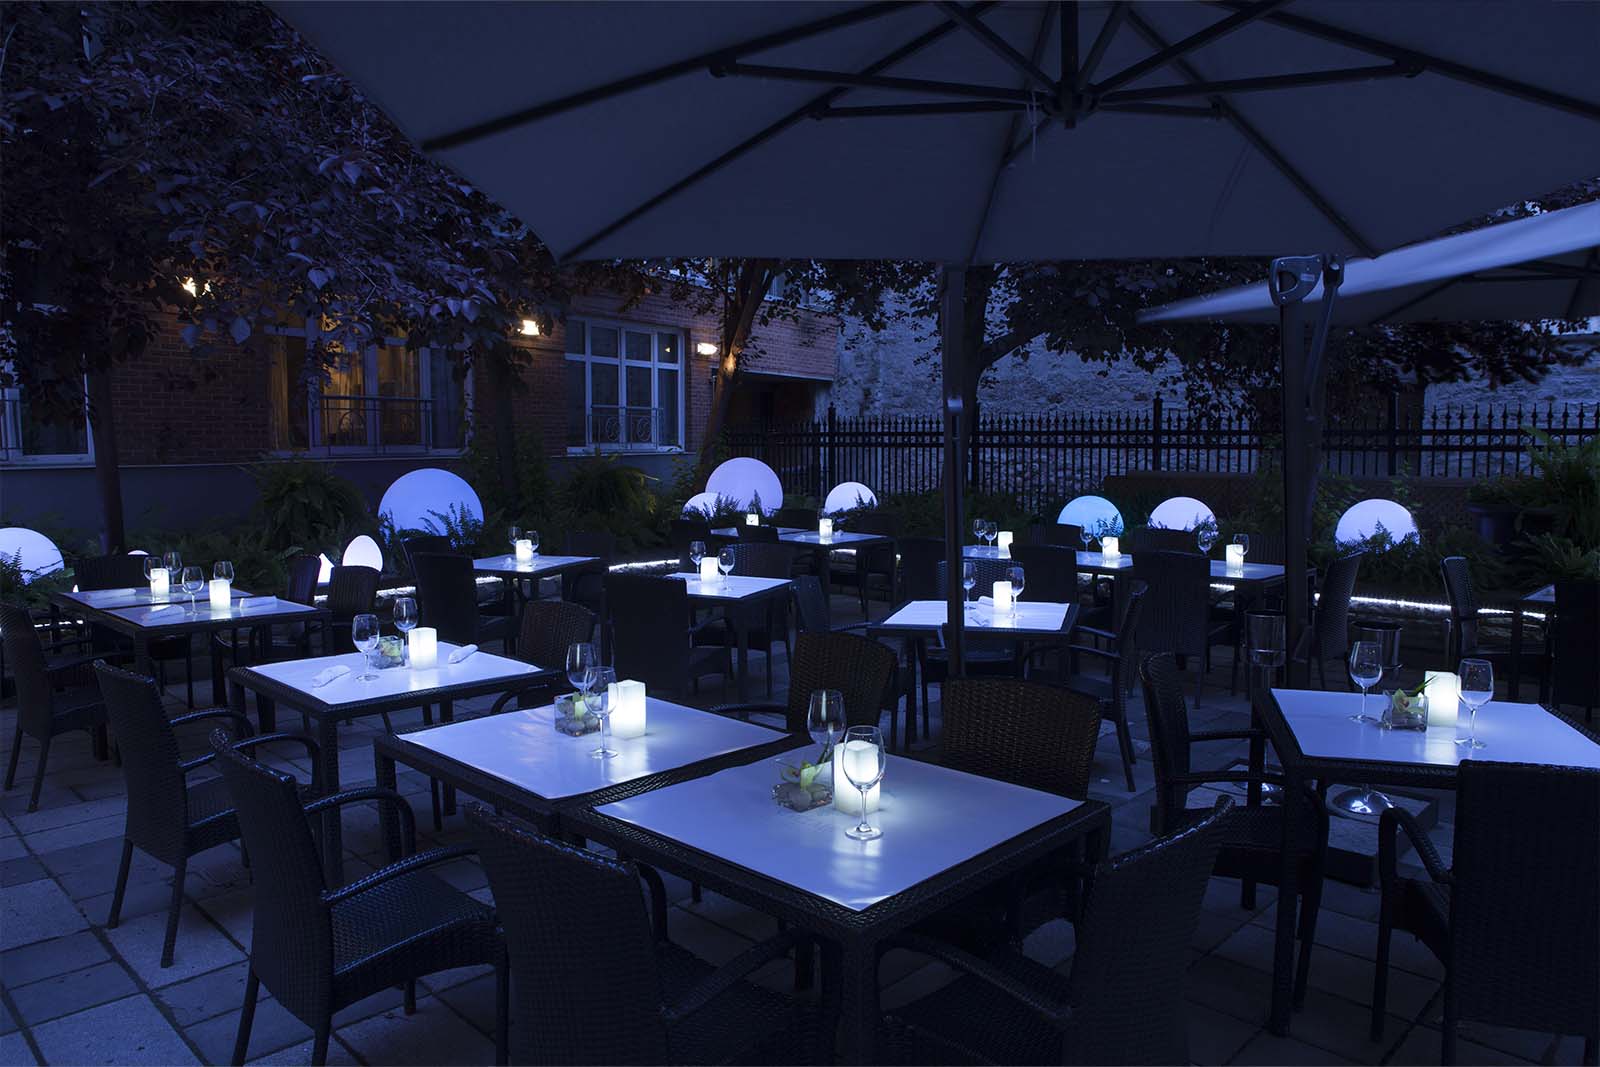 Pour un dîner romantique réservez votre expérience au Restaurant Oskar situé au coeur du Saint-Sulpice Hôtel Montréal